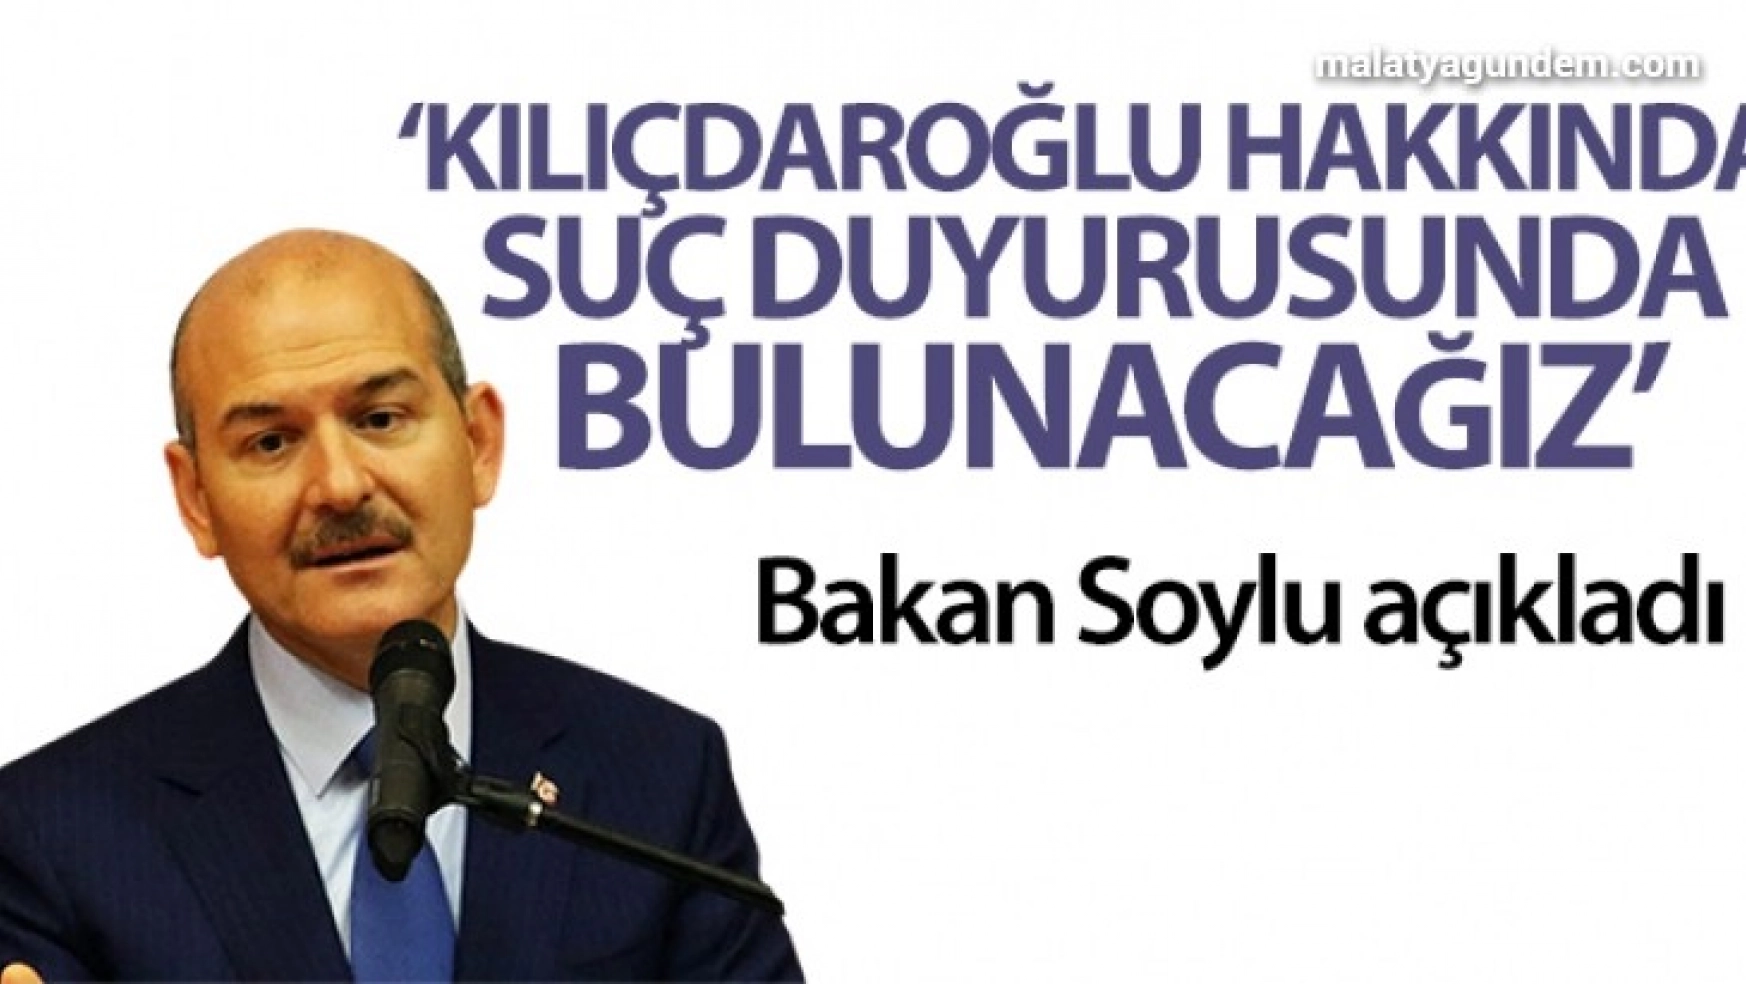 İçişleri Bakanı Soylu: 'Kemal Kılıçdaroğlu hakkında suç duyurusunda bulunacağız'